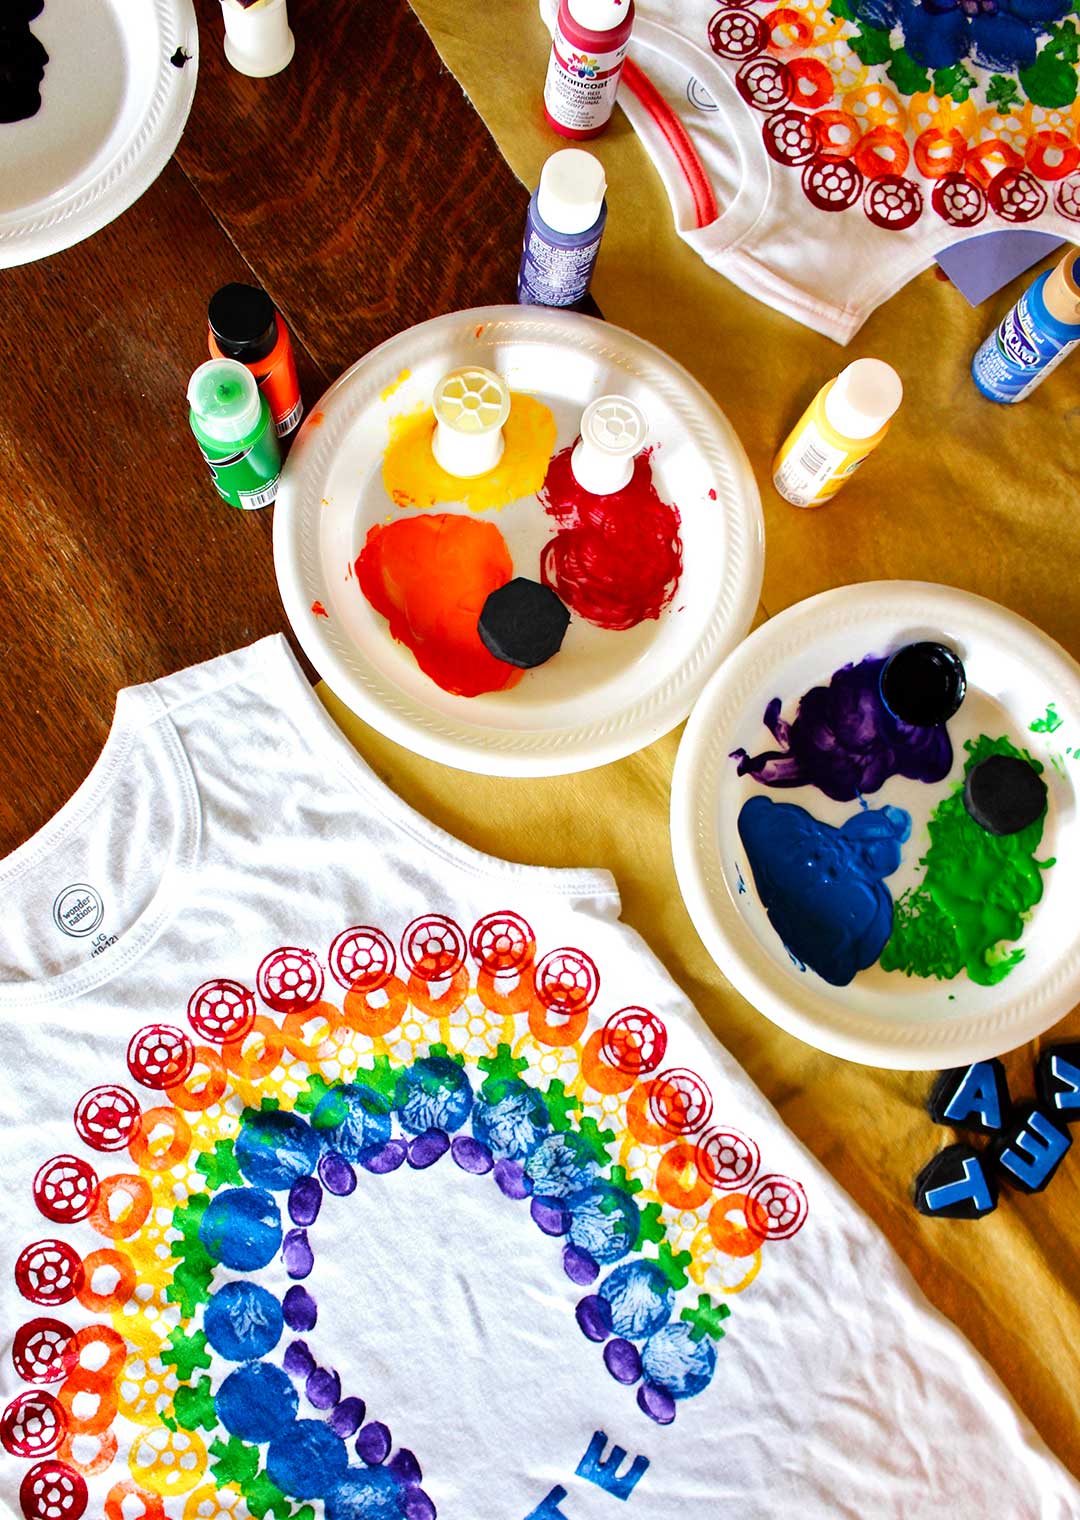 https://welcometonanas.com/wp-content/uploads/2022/05/Welcome-to-Nanas-Rainbow-Tshirt-DIY-for-Kids-7.jpg